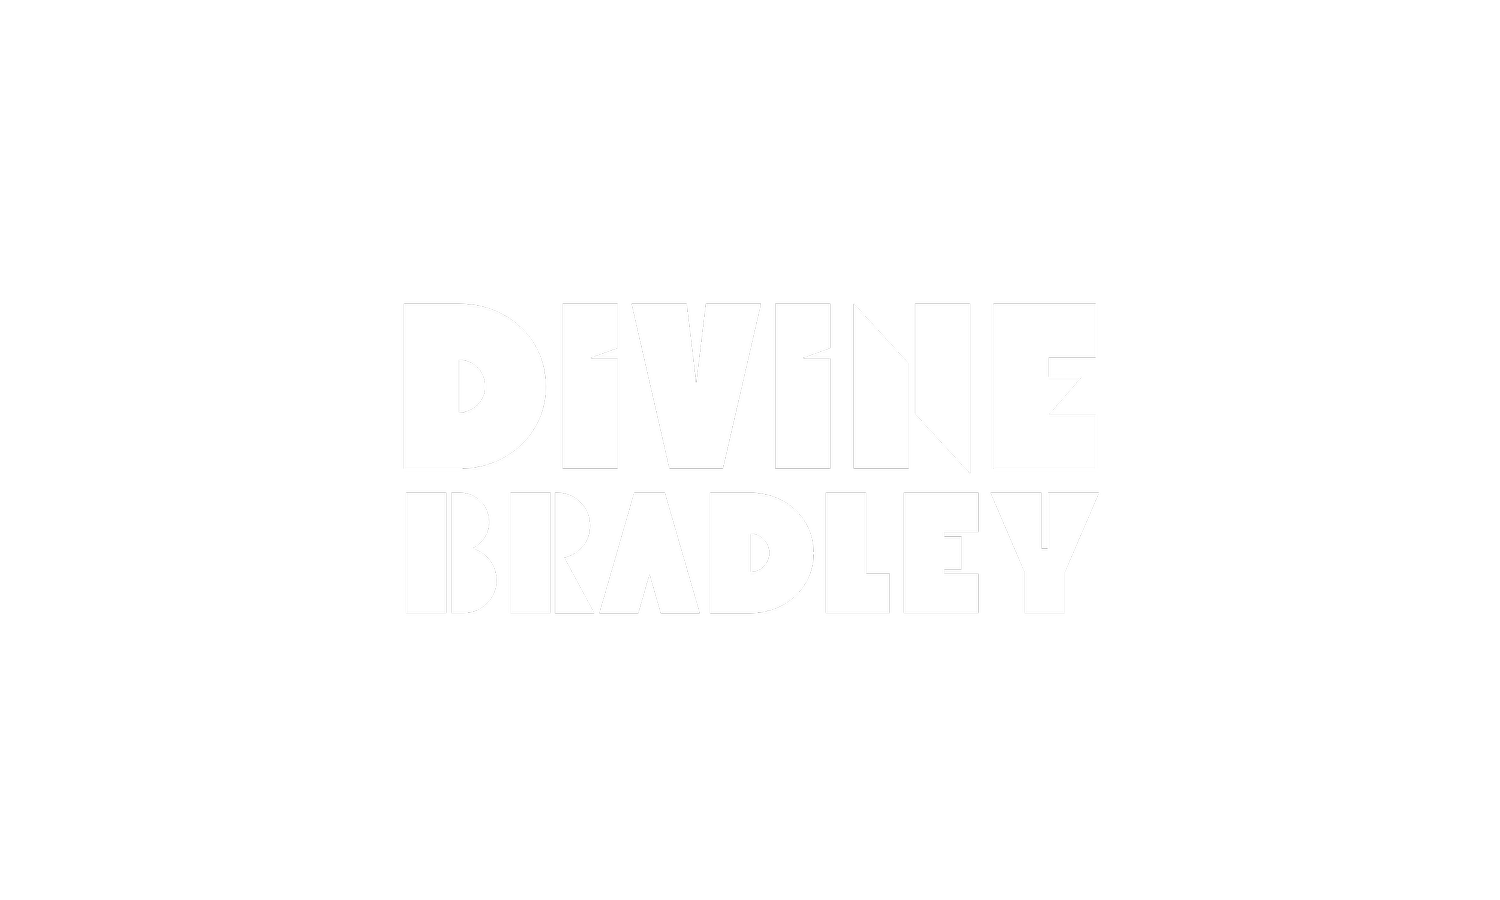 Divine Bradley